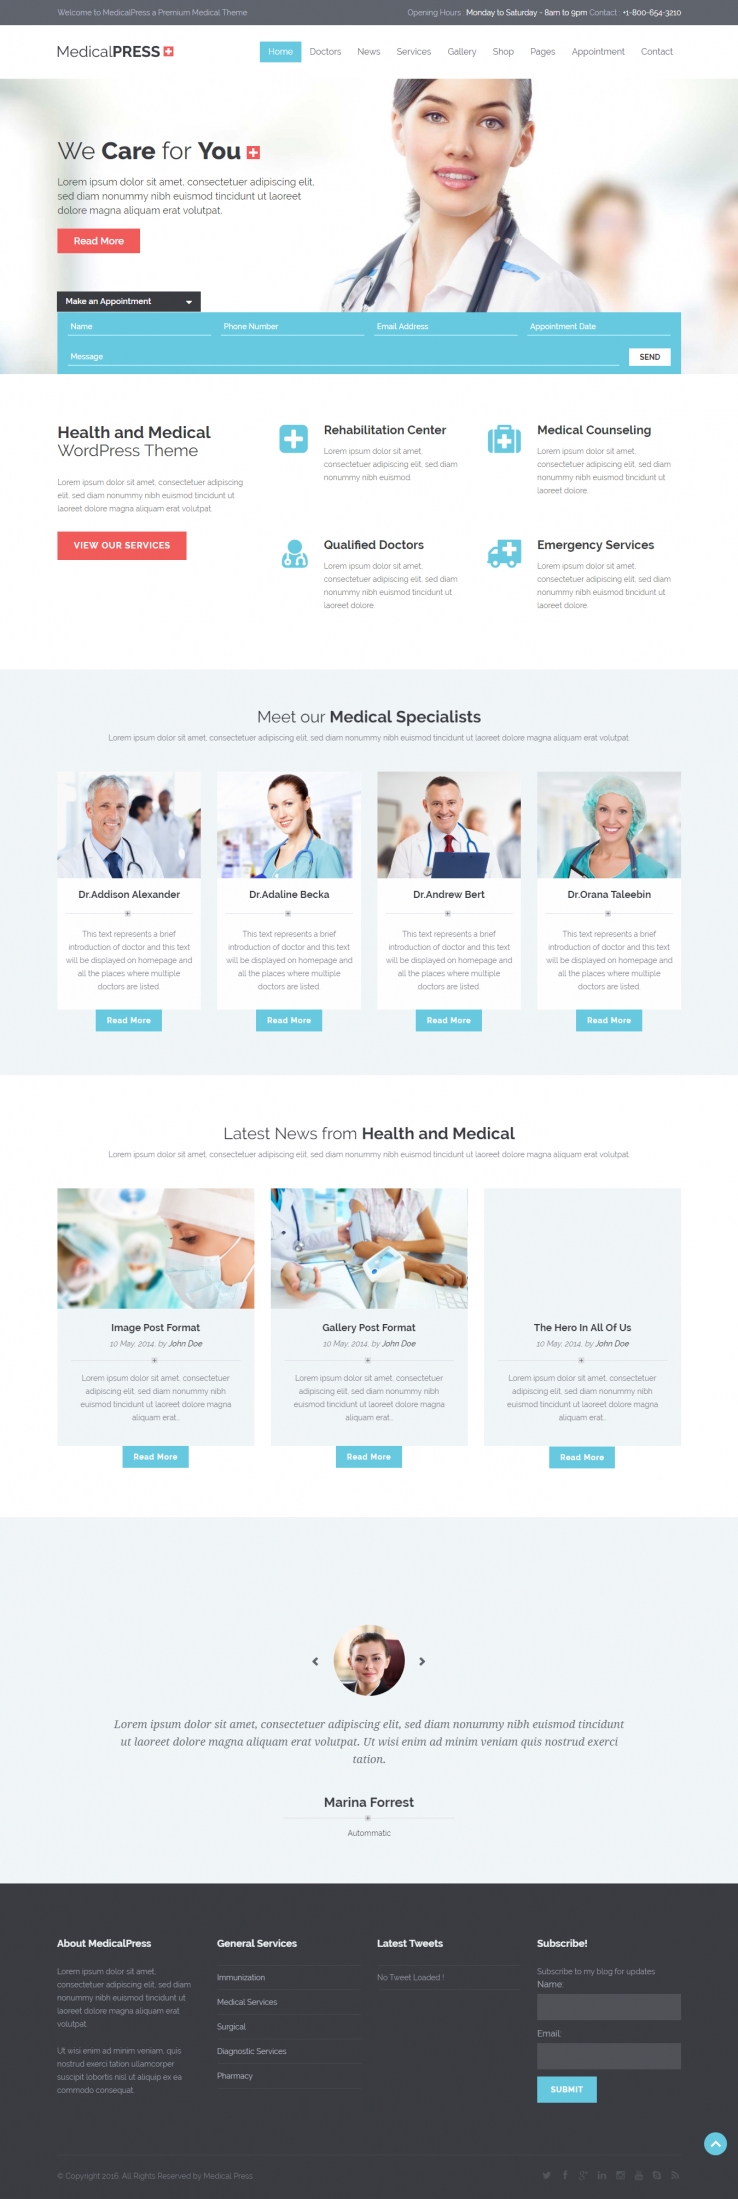 蓝色欧美风格的健康医疗服务企业网站源码下载